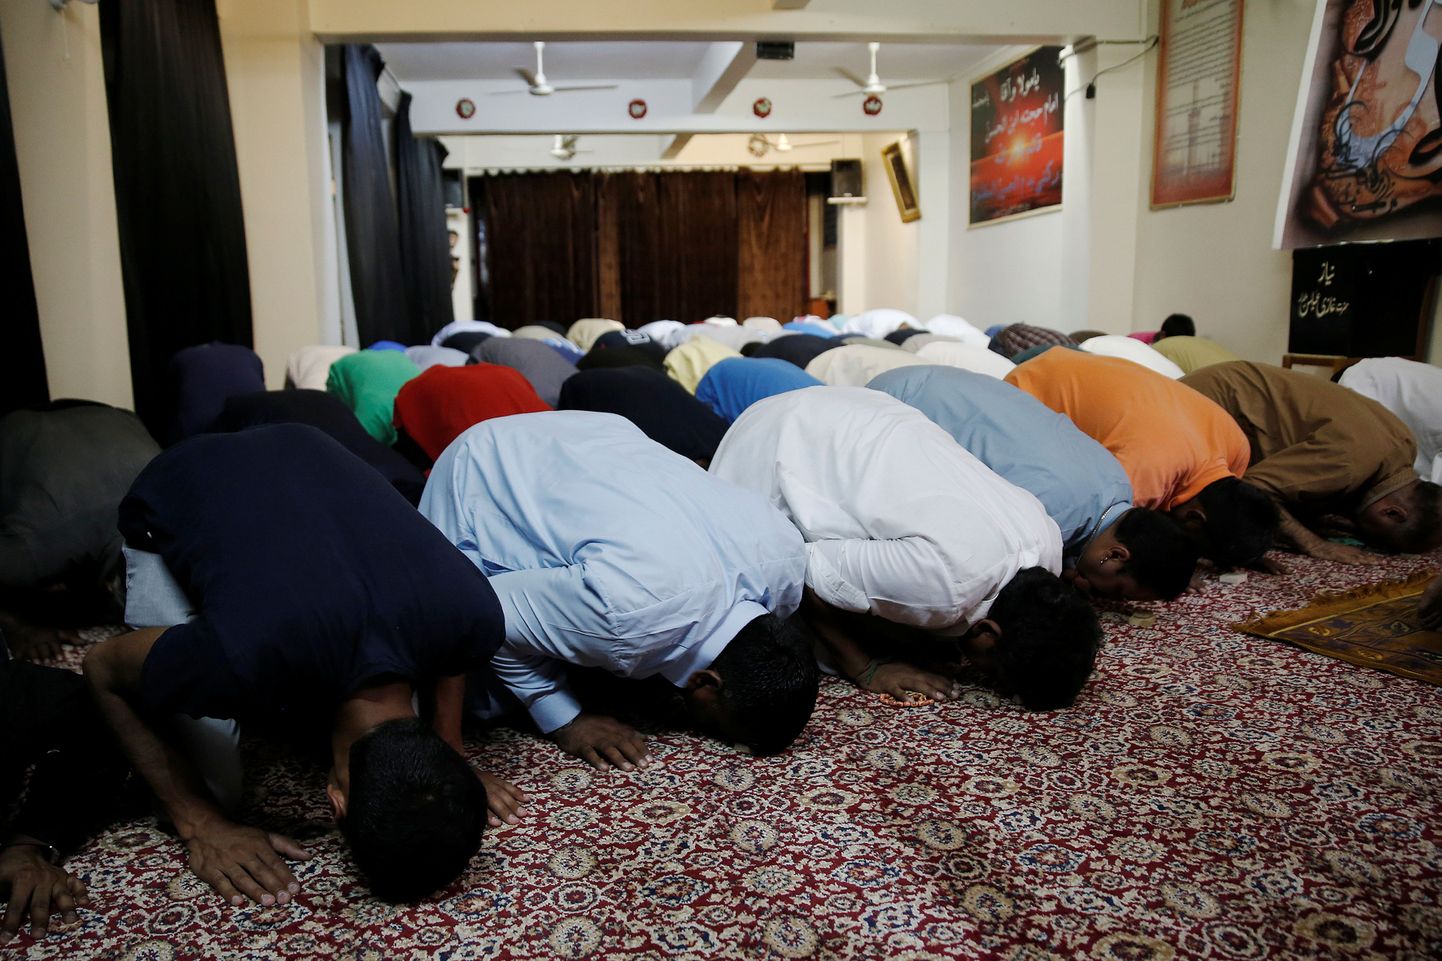 Kreeka moslemid palvetamas mošees, mis on rajatud elumaja keldrisse.